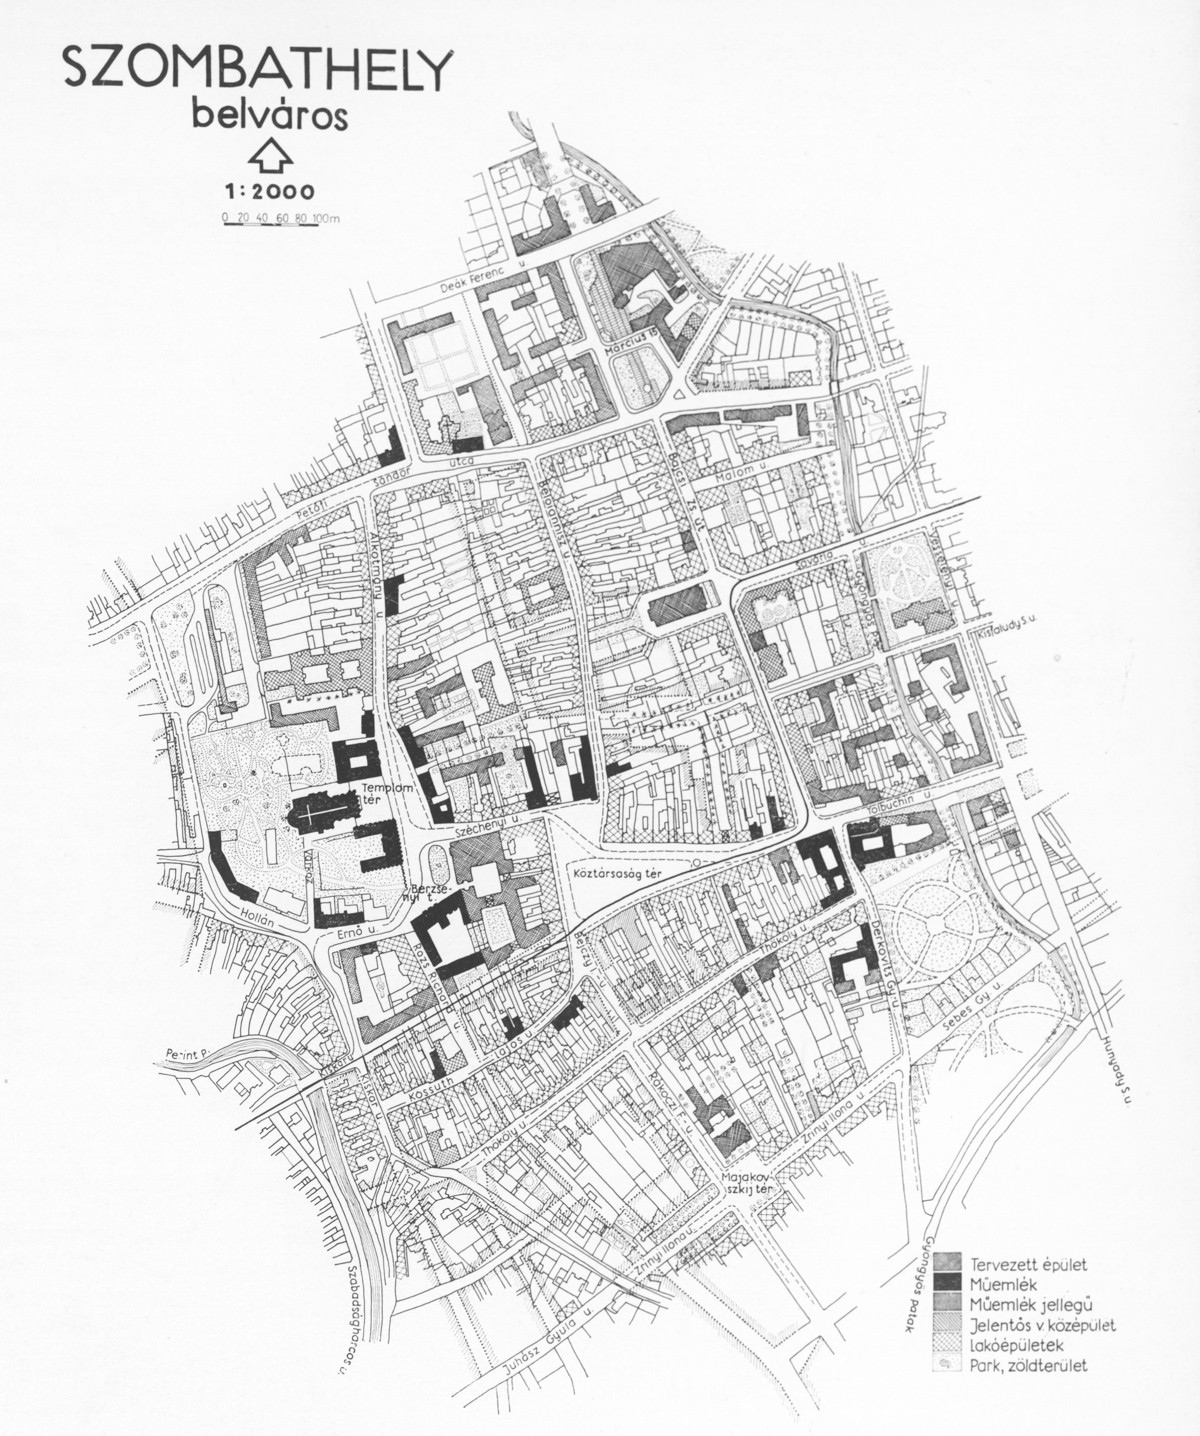 Szombathely belvárosának rekonstrukciós terve